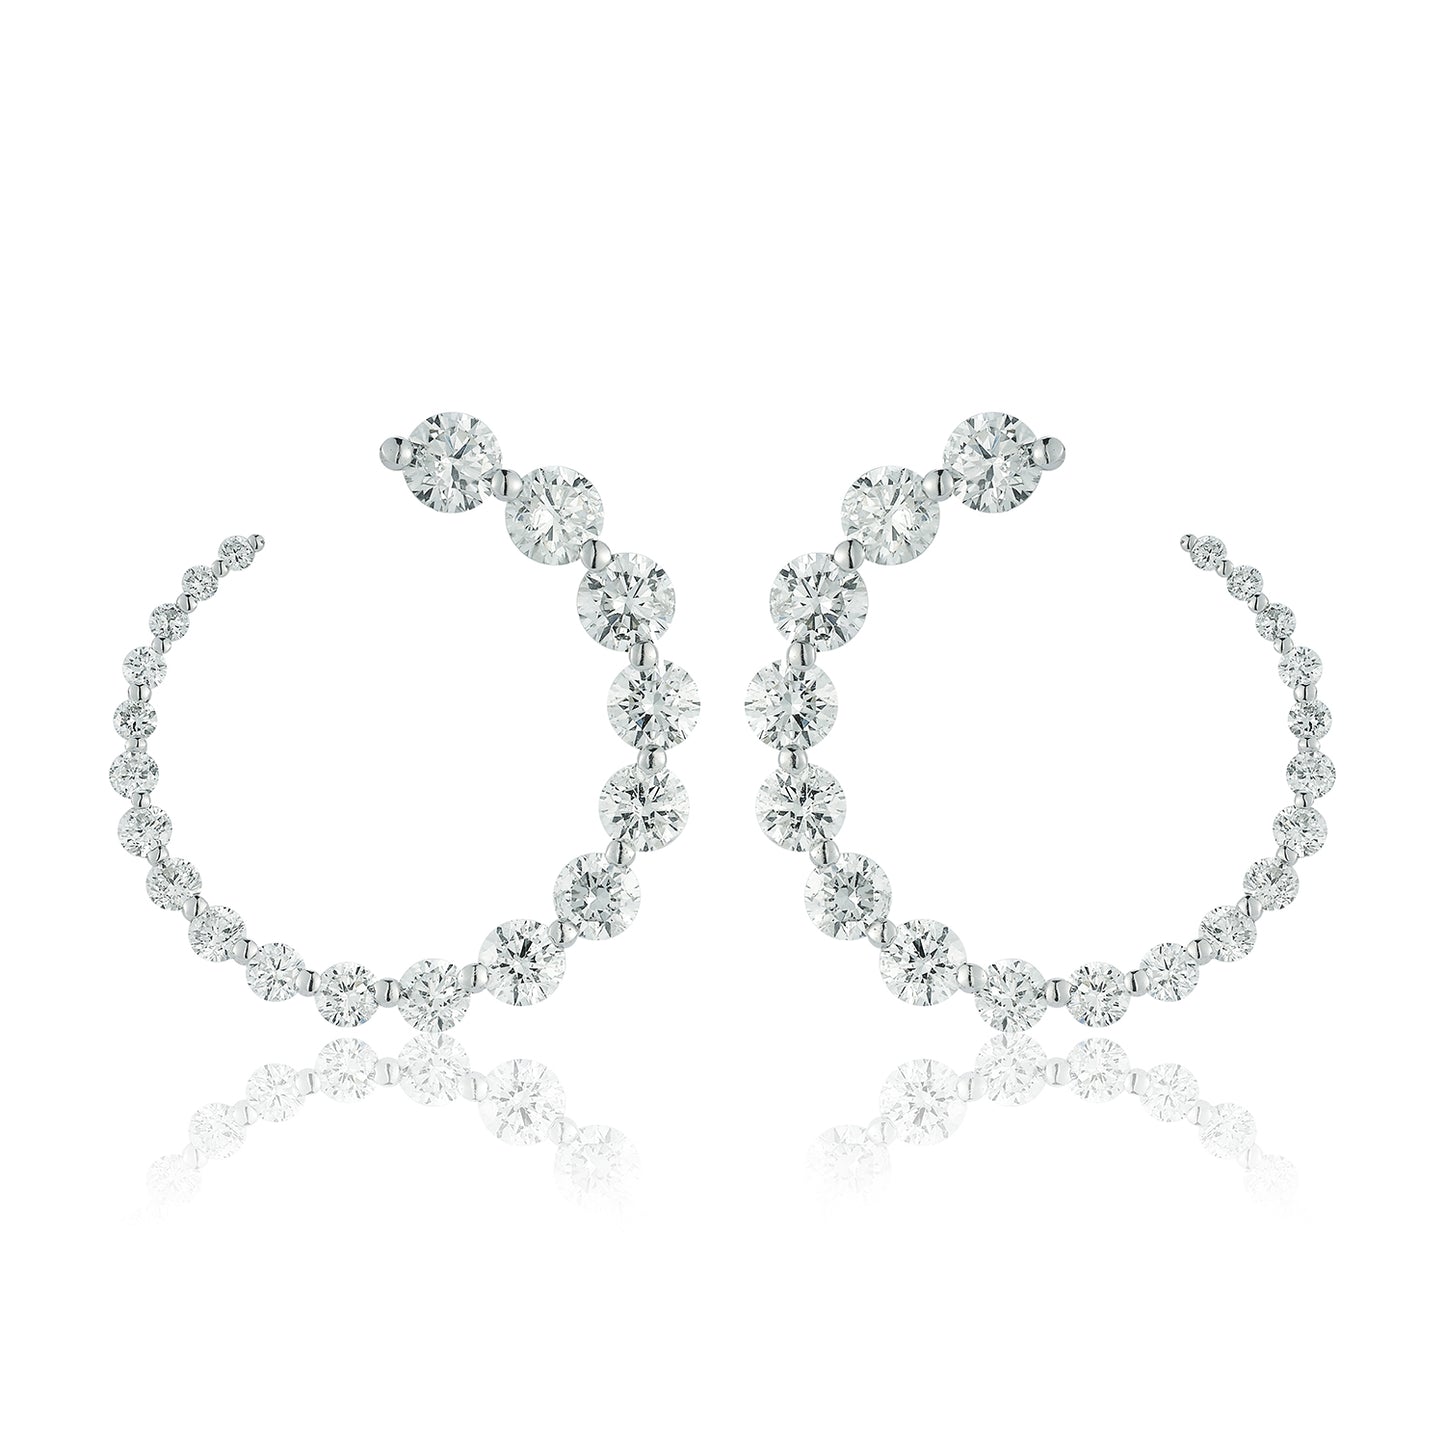 Graduated Diamond Circle Earrings